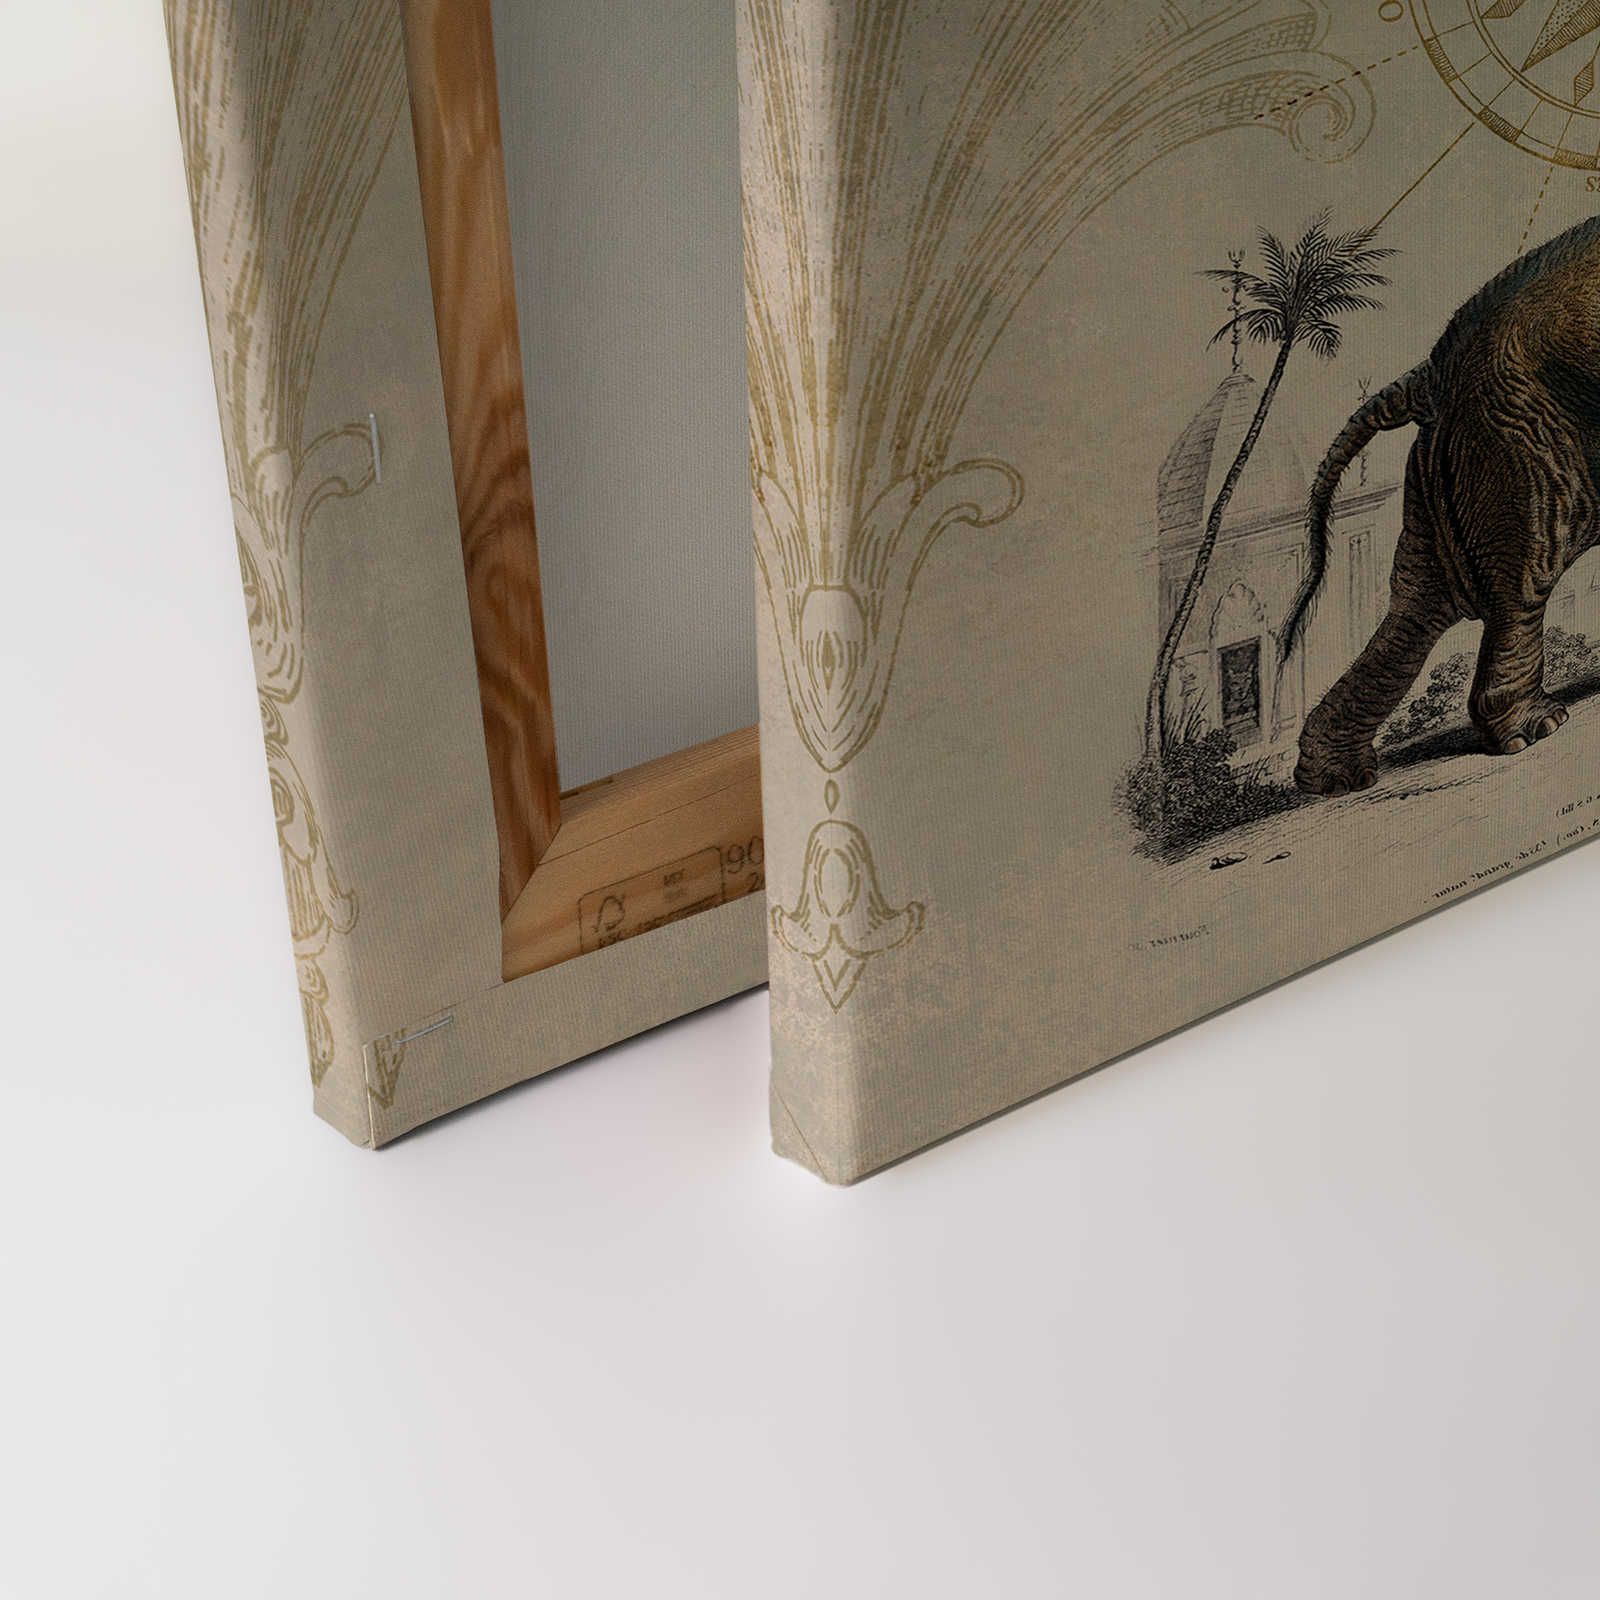             Nostalgie Leinwandbild mit Vintage Elefanten Muster – 0,90 m x 0,60 m
        